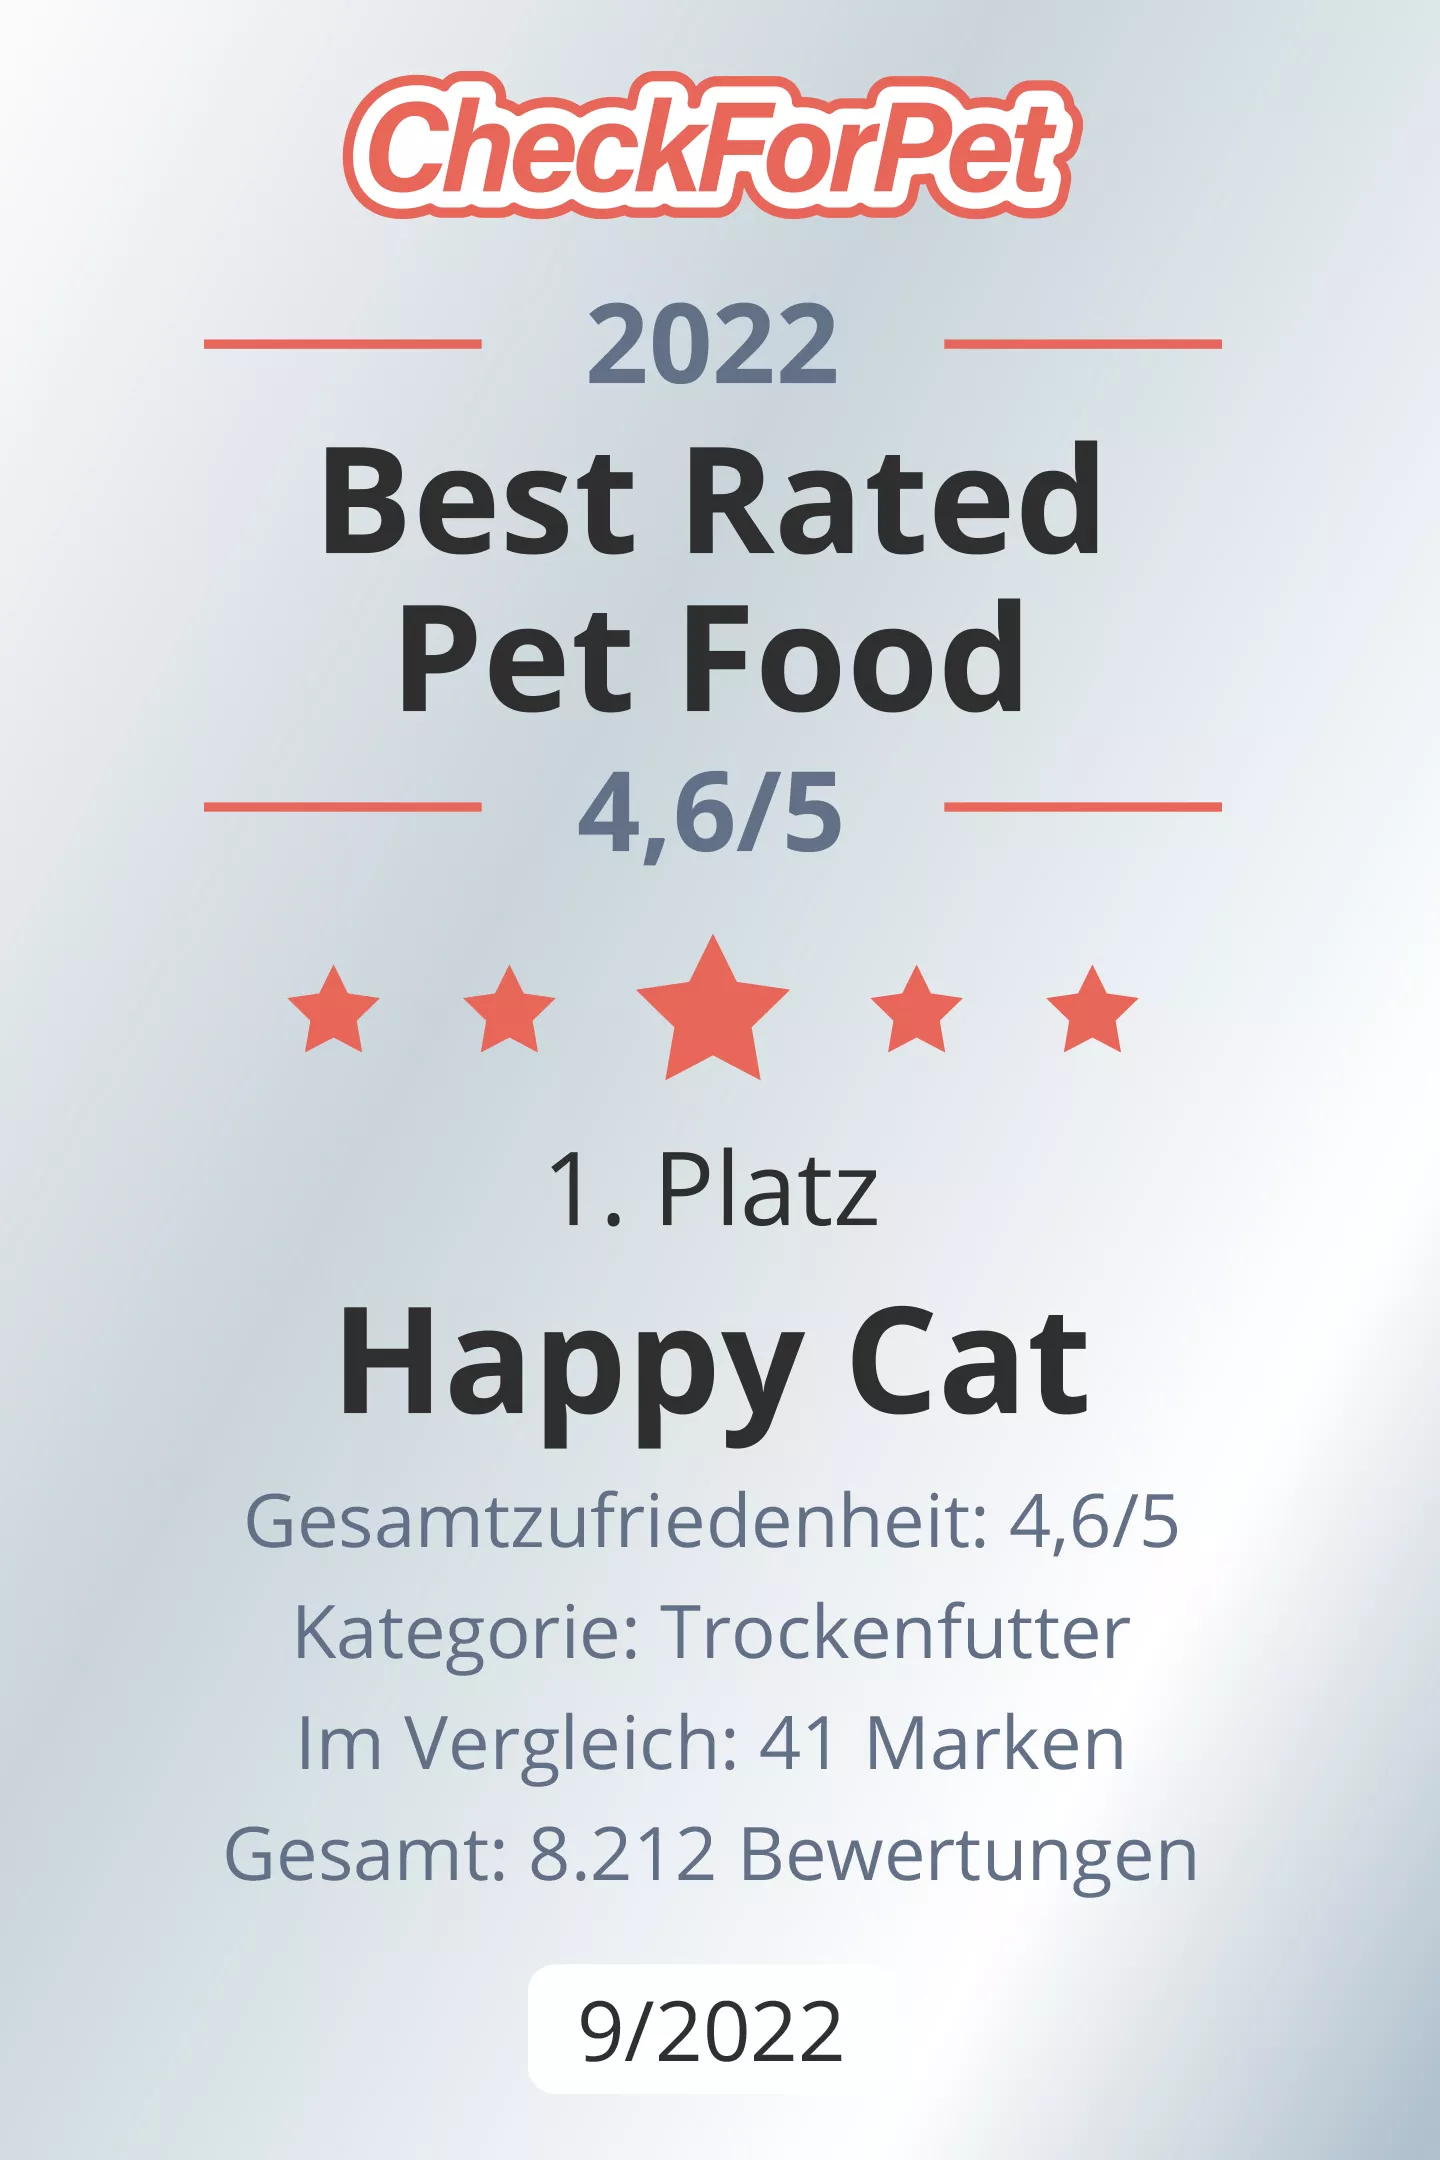 Happy Cat Minkas Perfect Mix Geflügel, Fisch & Lamm 1,5 kg 